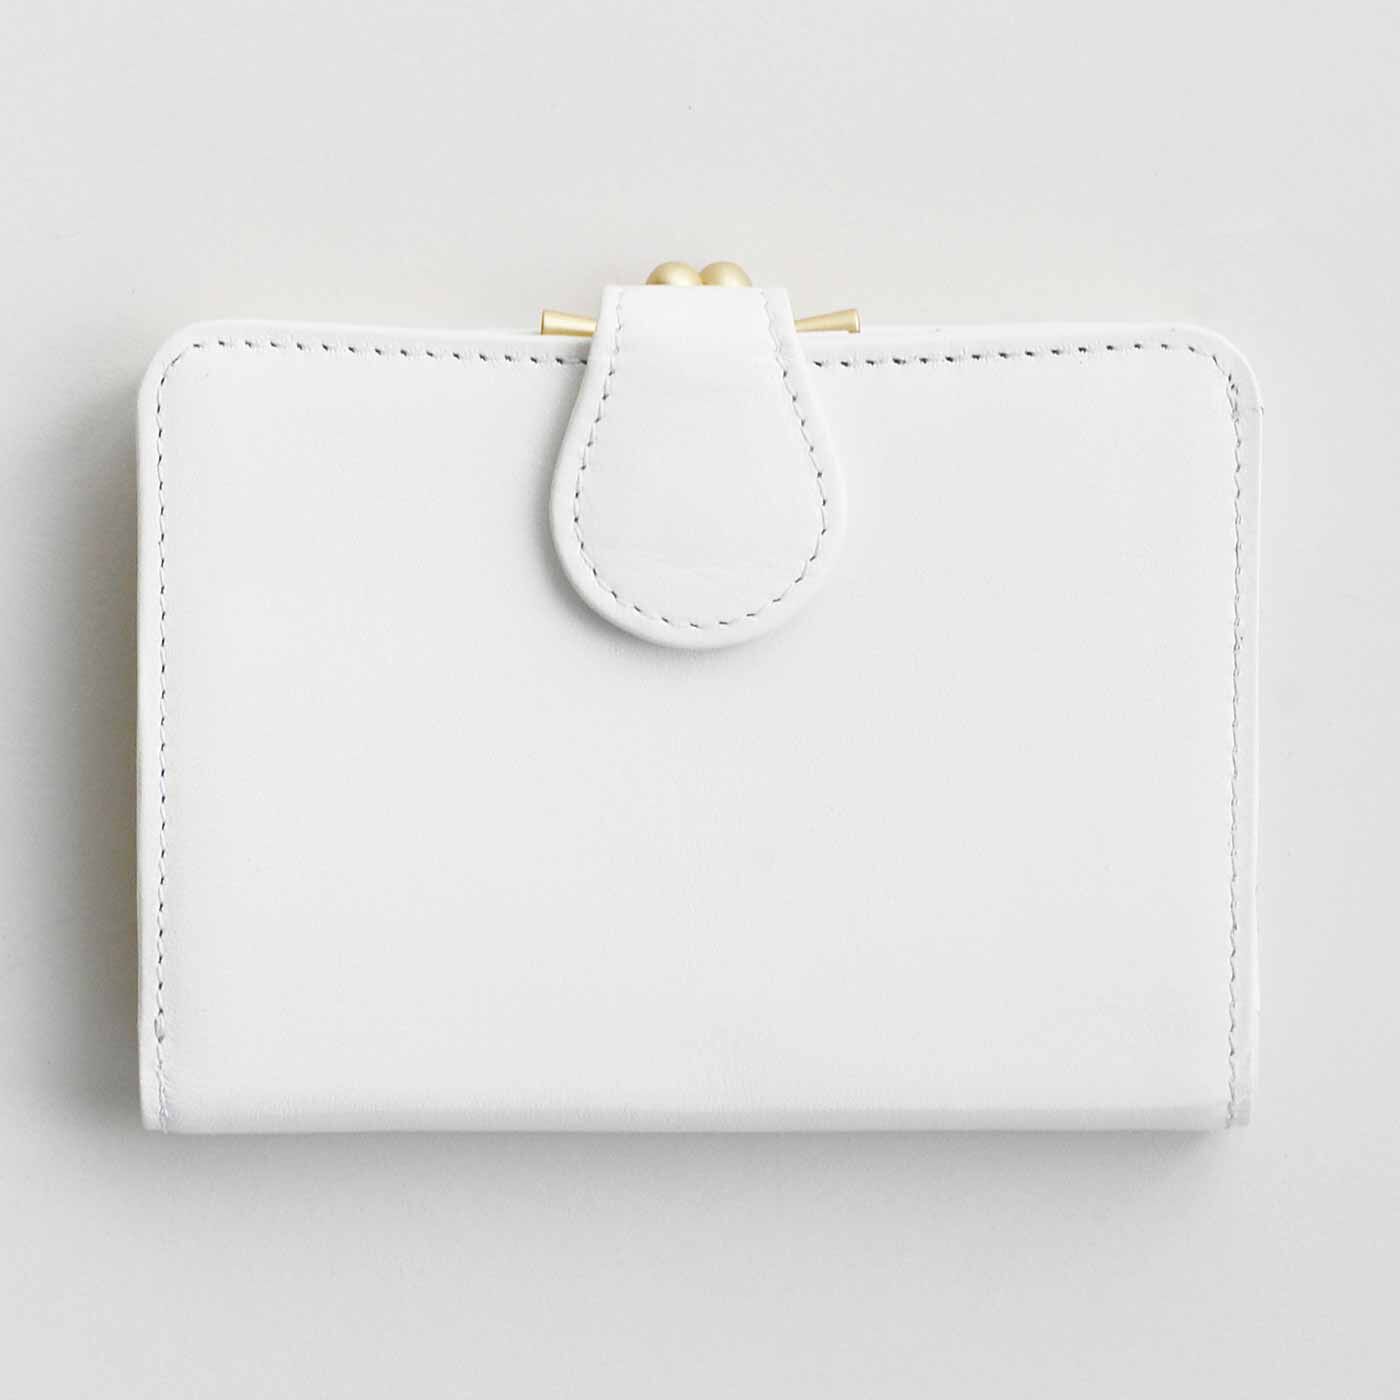 ＆Stories|職人が誂えた 仕草華やぐ 大人の馬革折り財布〈白馬色〉[本革 財布：日本製]|手にしっくり収まる、絶妙サイズの折り財布